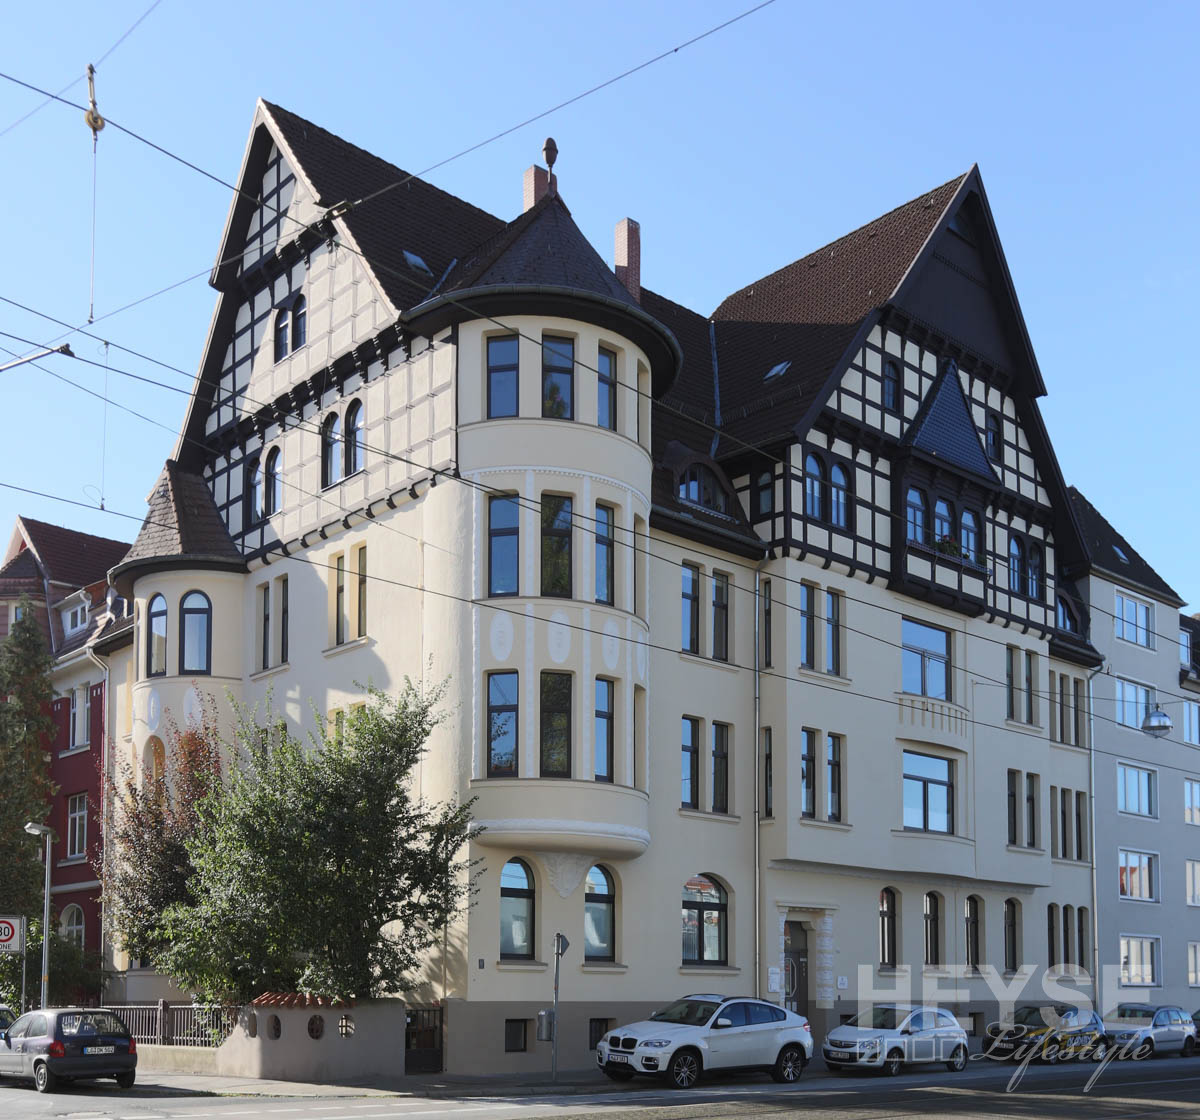 Denkmalschutz - Fassade - Fachwerk - Sanierung -Anstrich